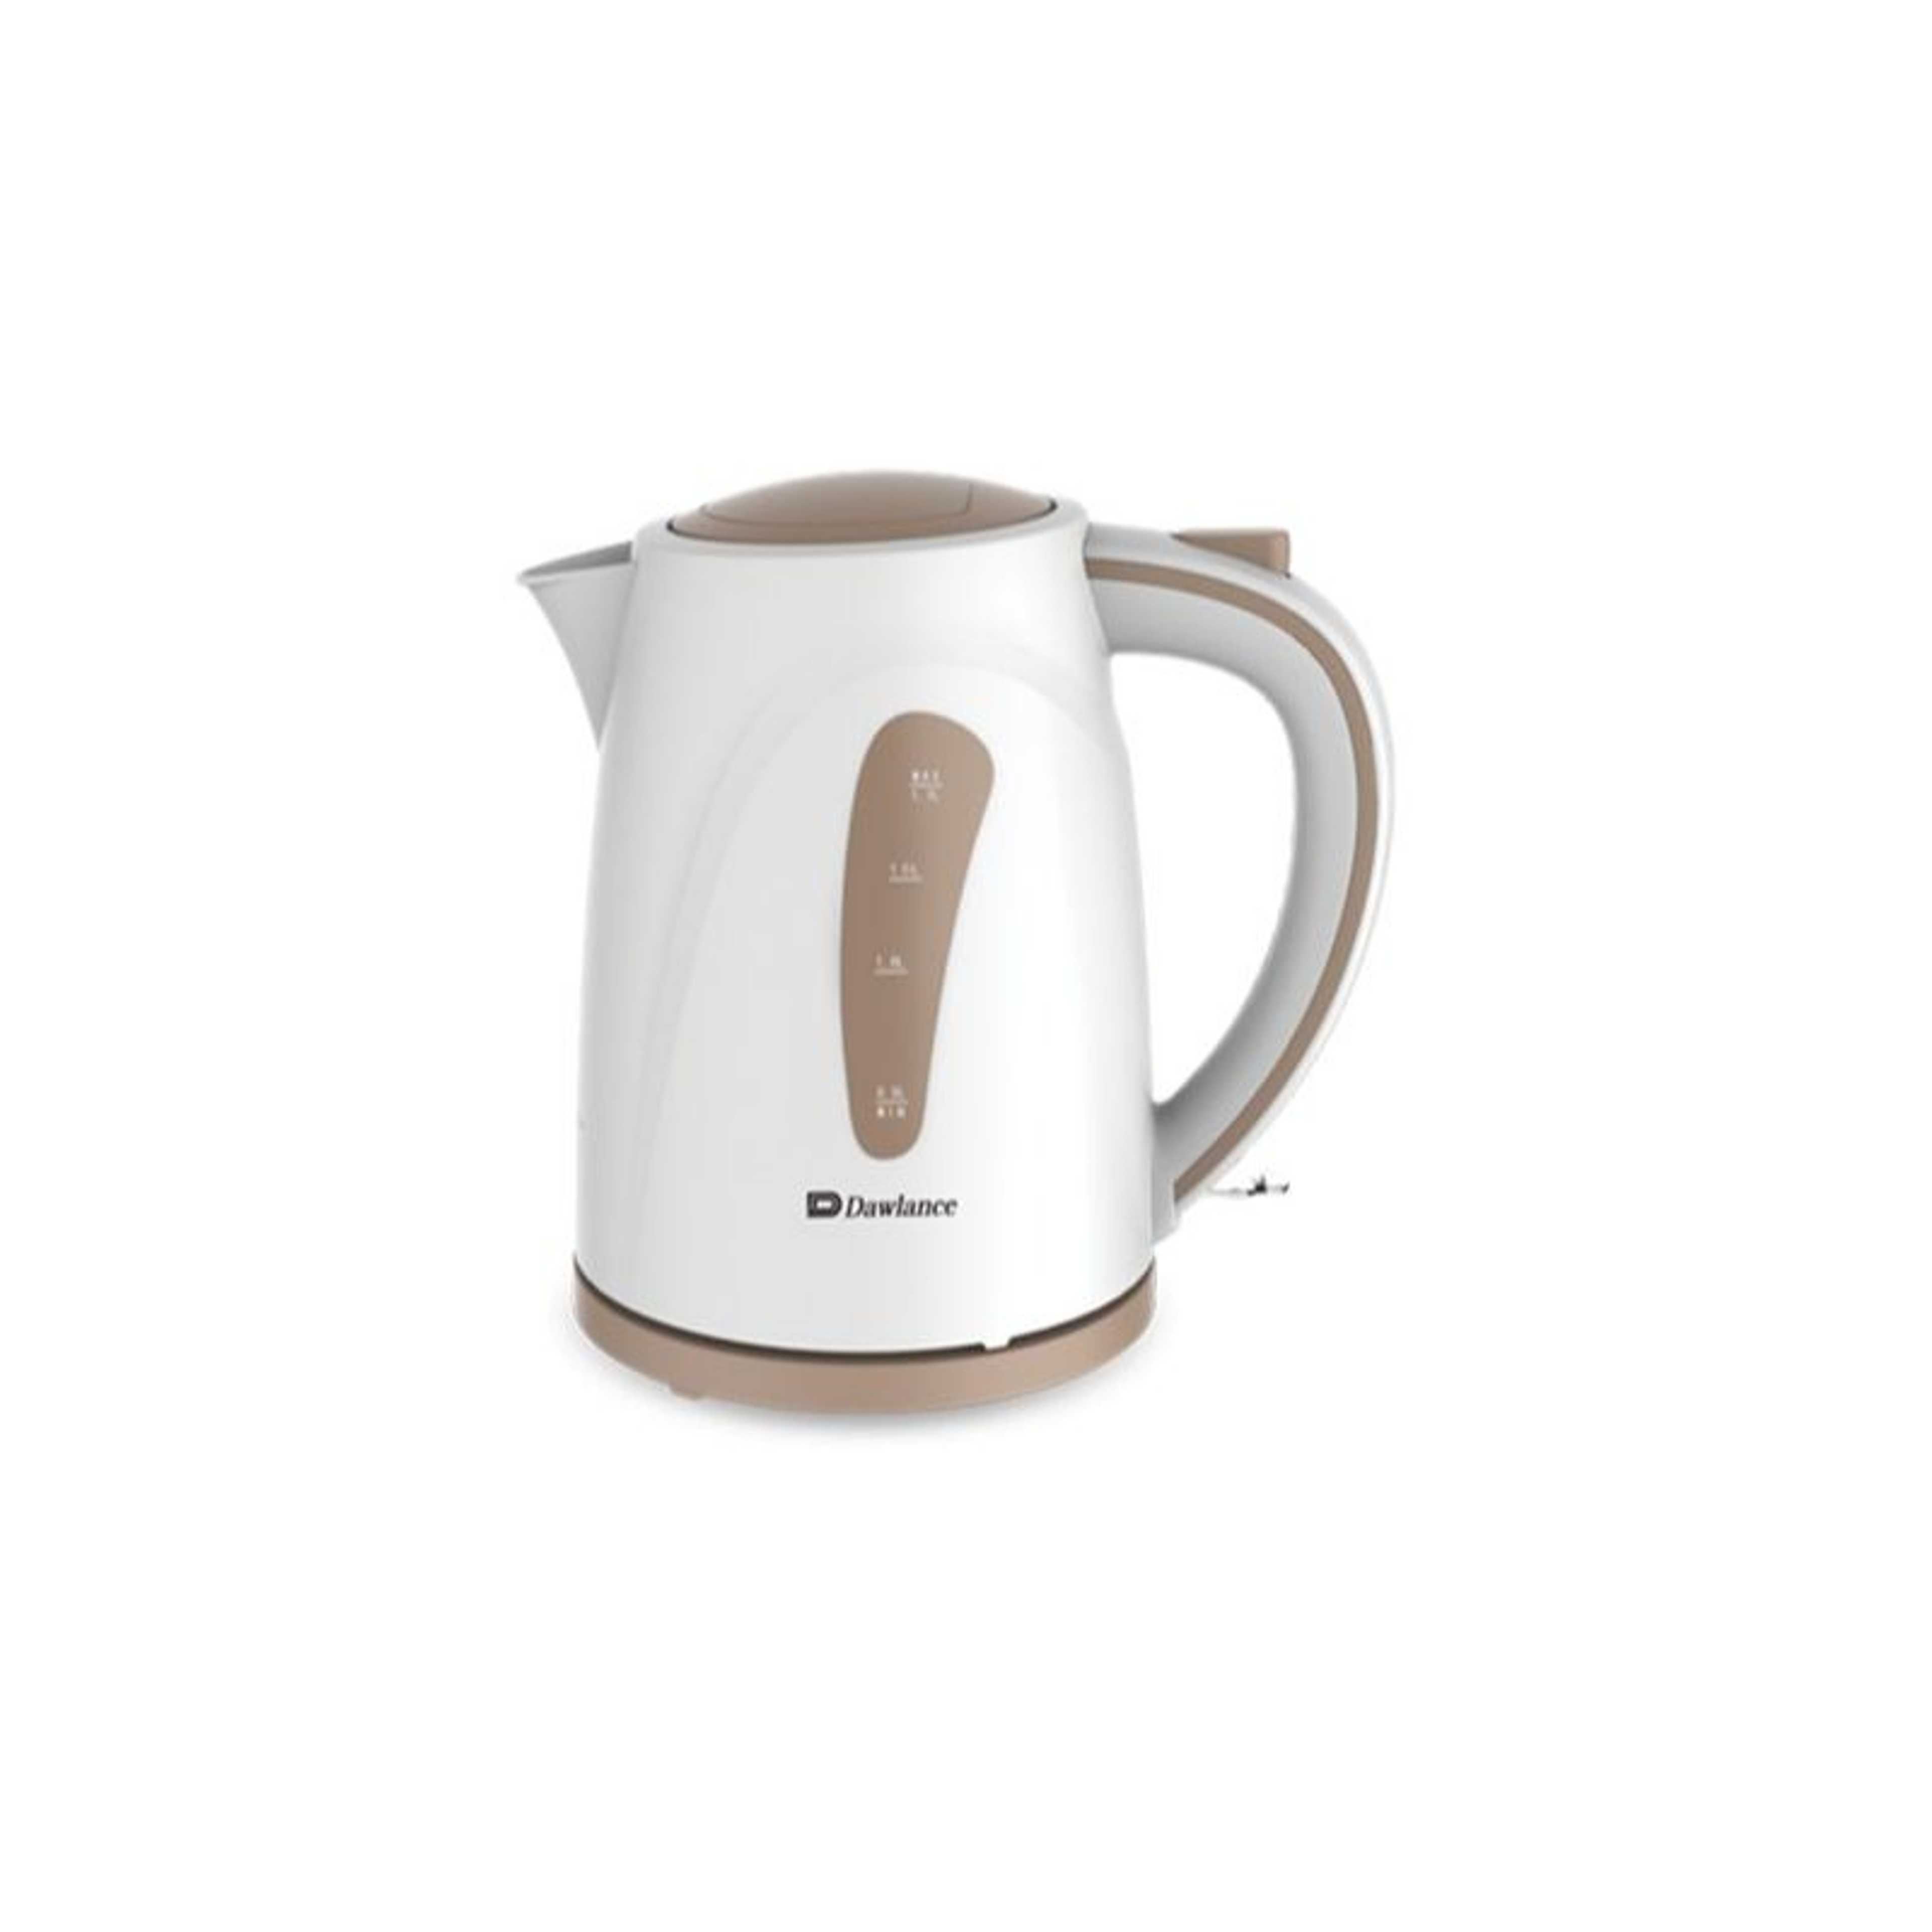 Dawlance Kettle Teapot | Kitchen Appliance - DWEK-7200